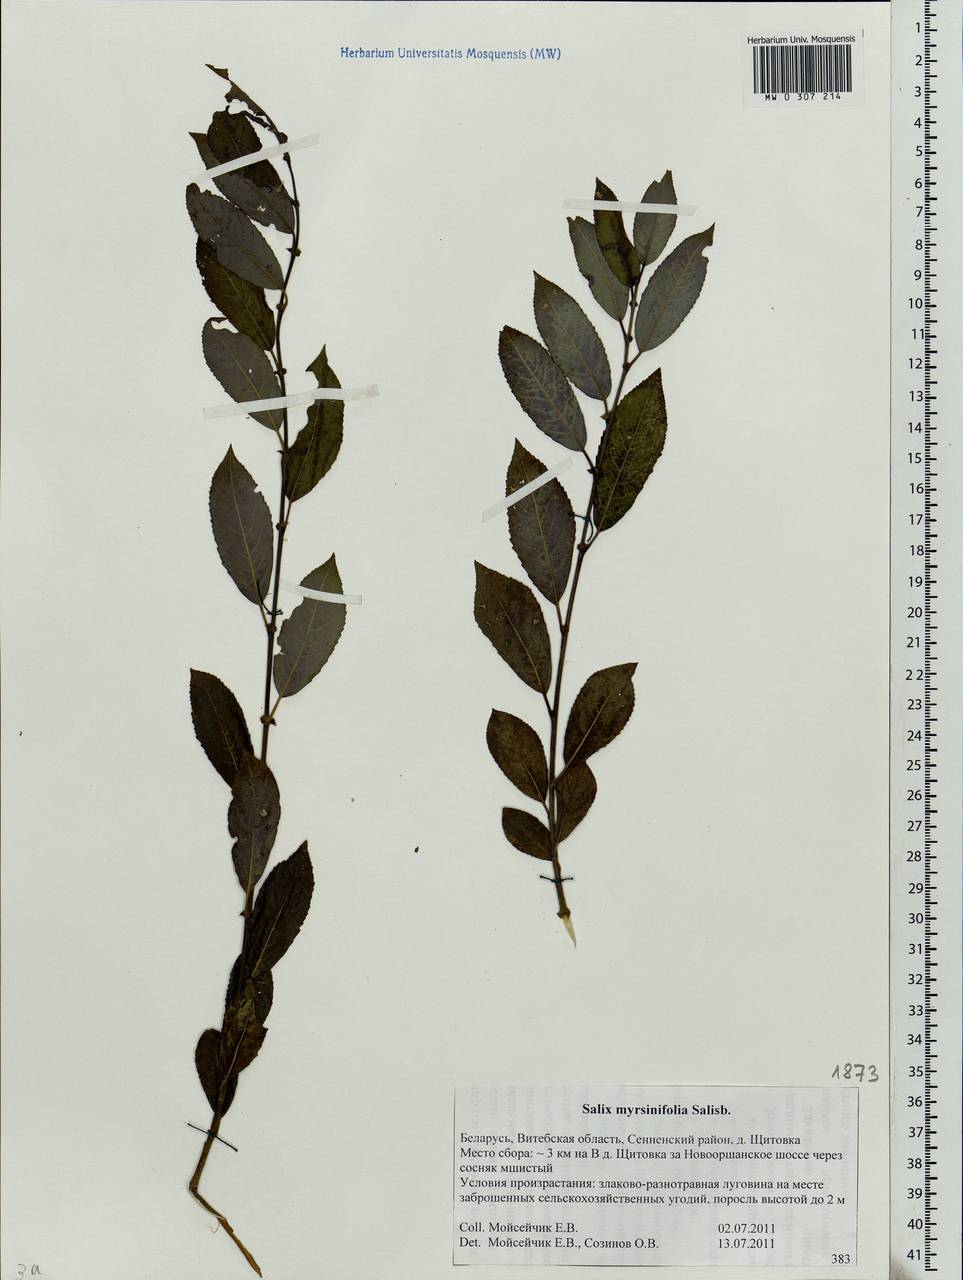 Salix myrsinifolia, Eastern Europe, Belarus (E3a) (Belarus)